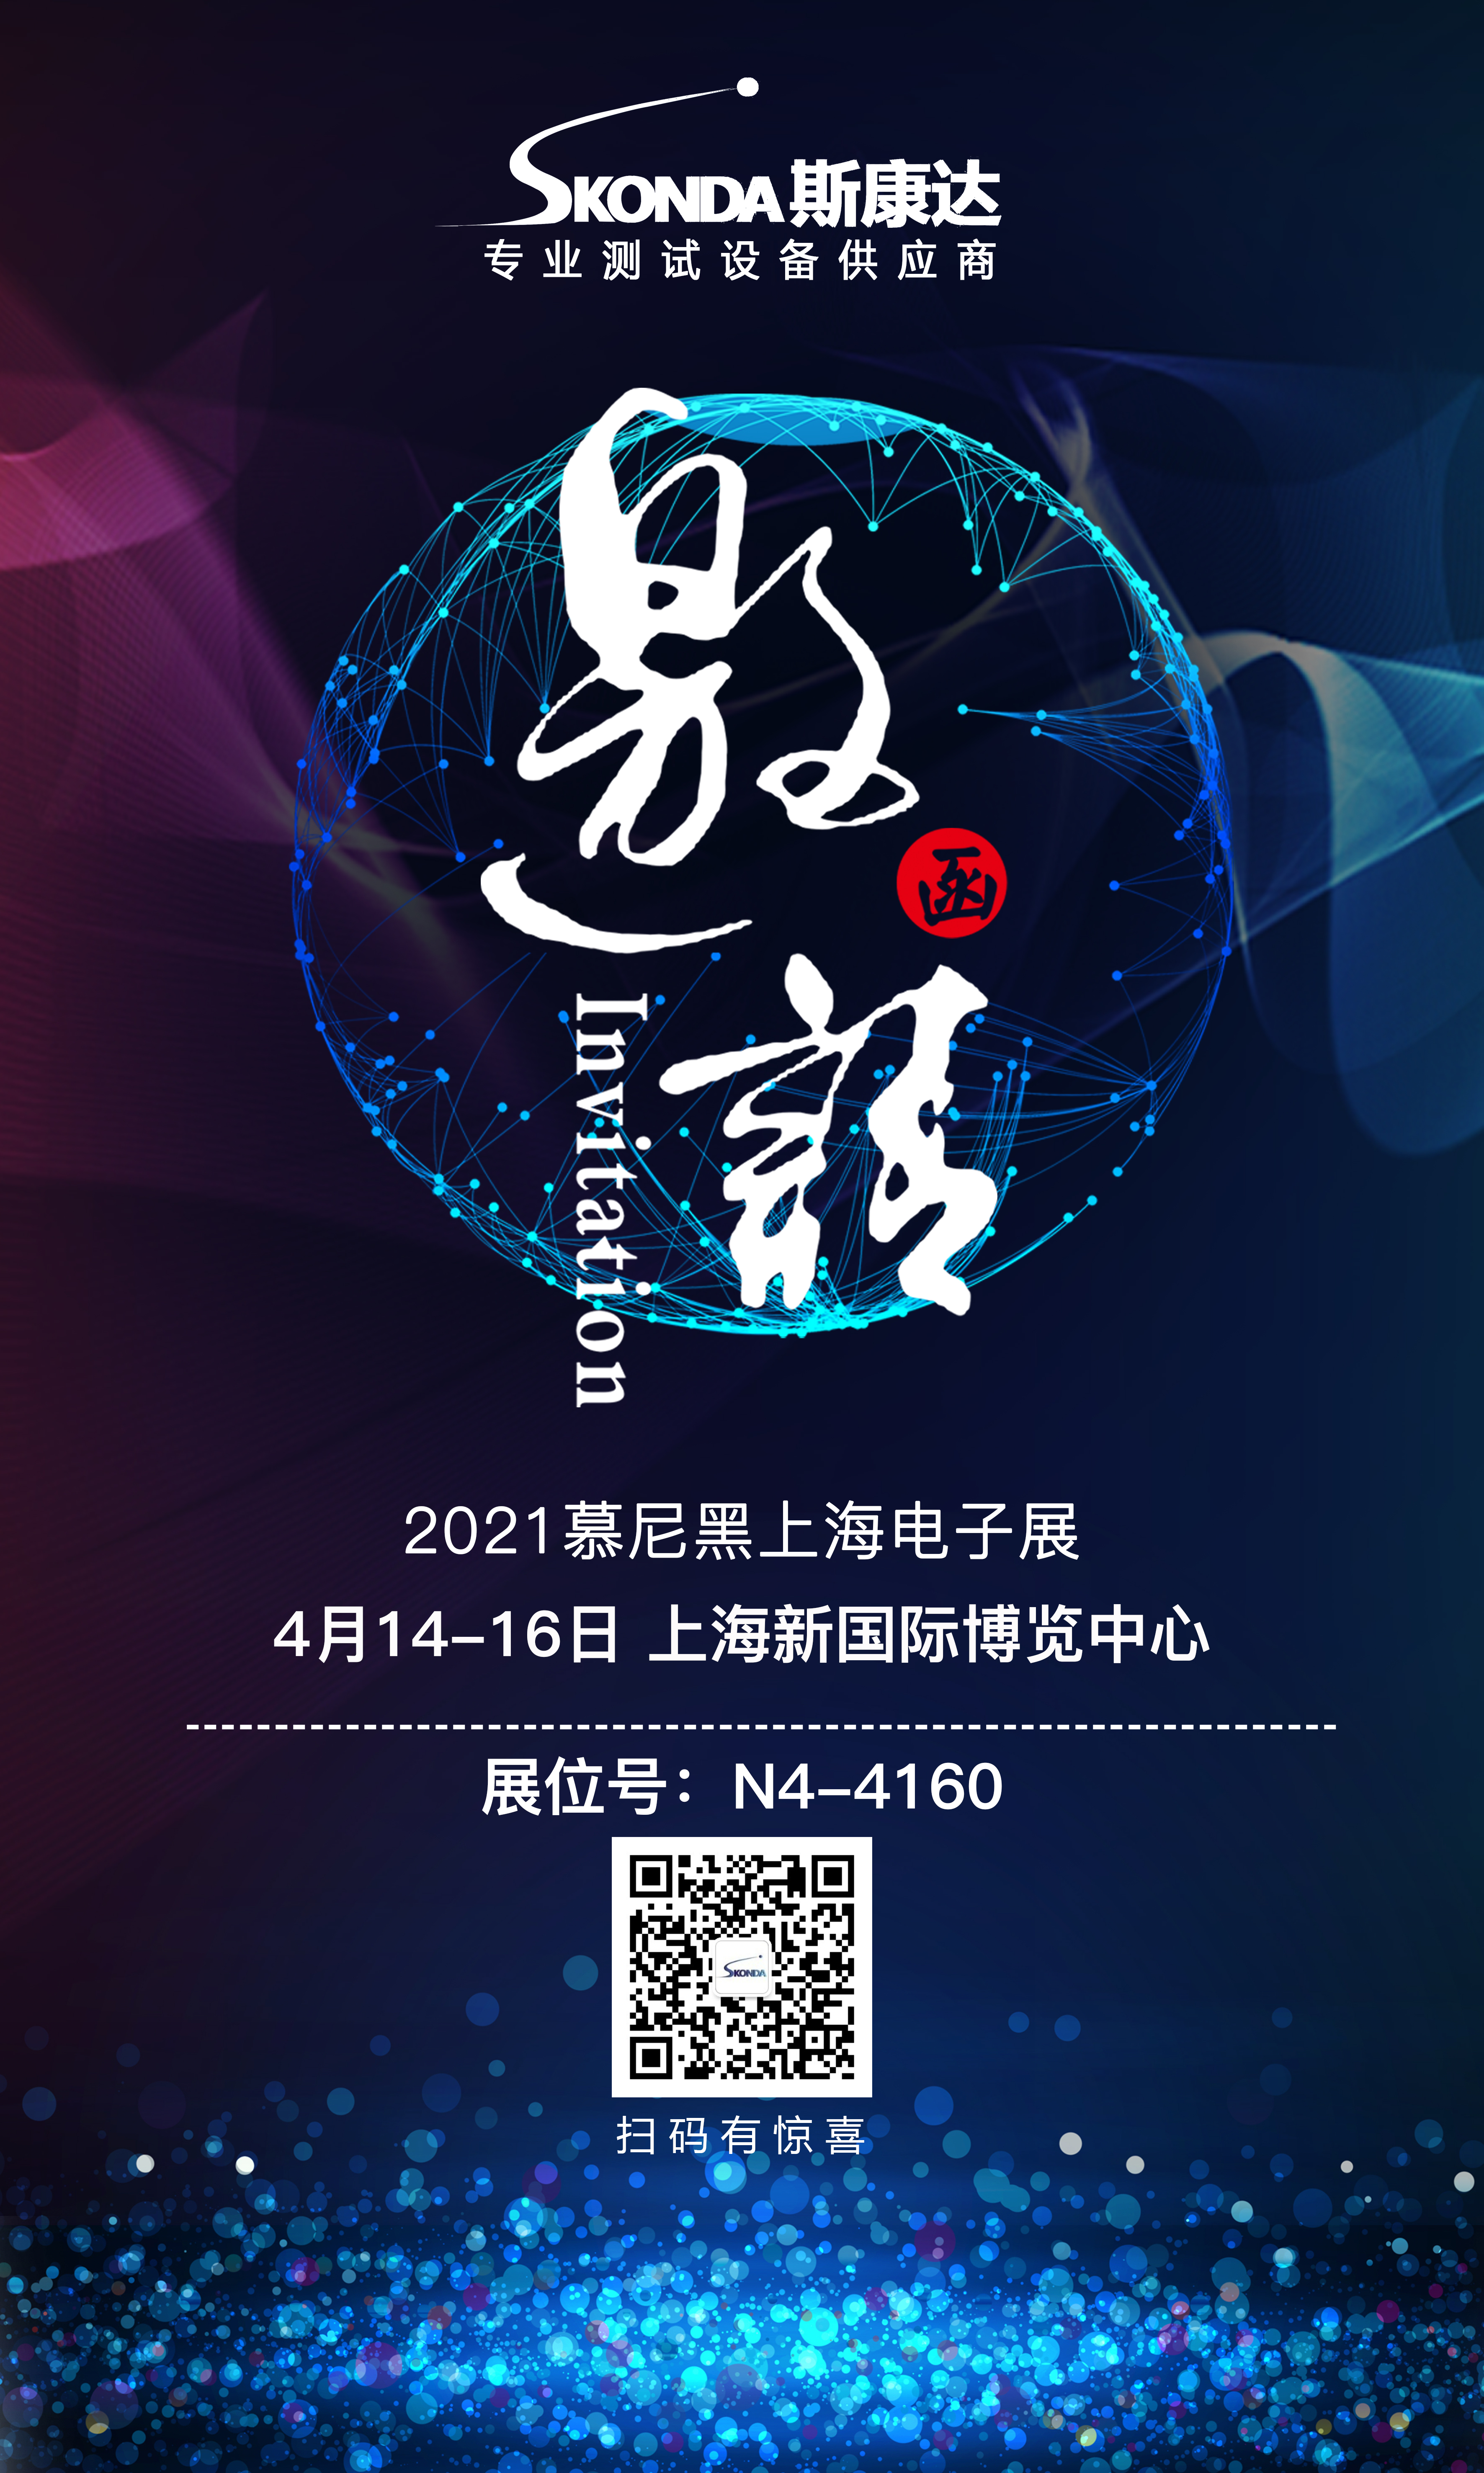 【展會邀請】斯康達誠邀您參加4月14-16日慕尼黑上海電子展！(圖1)